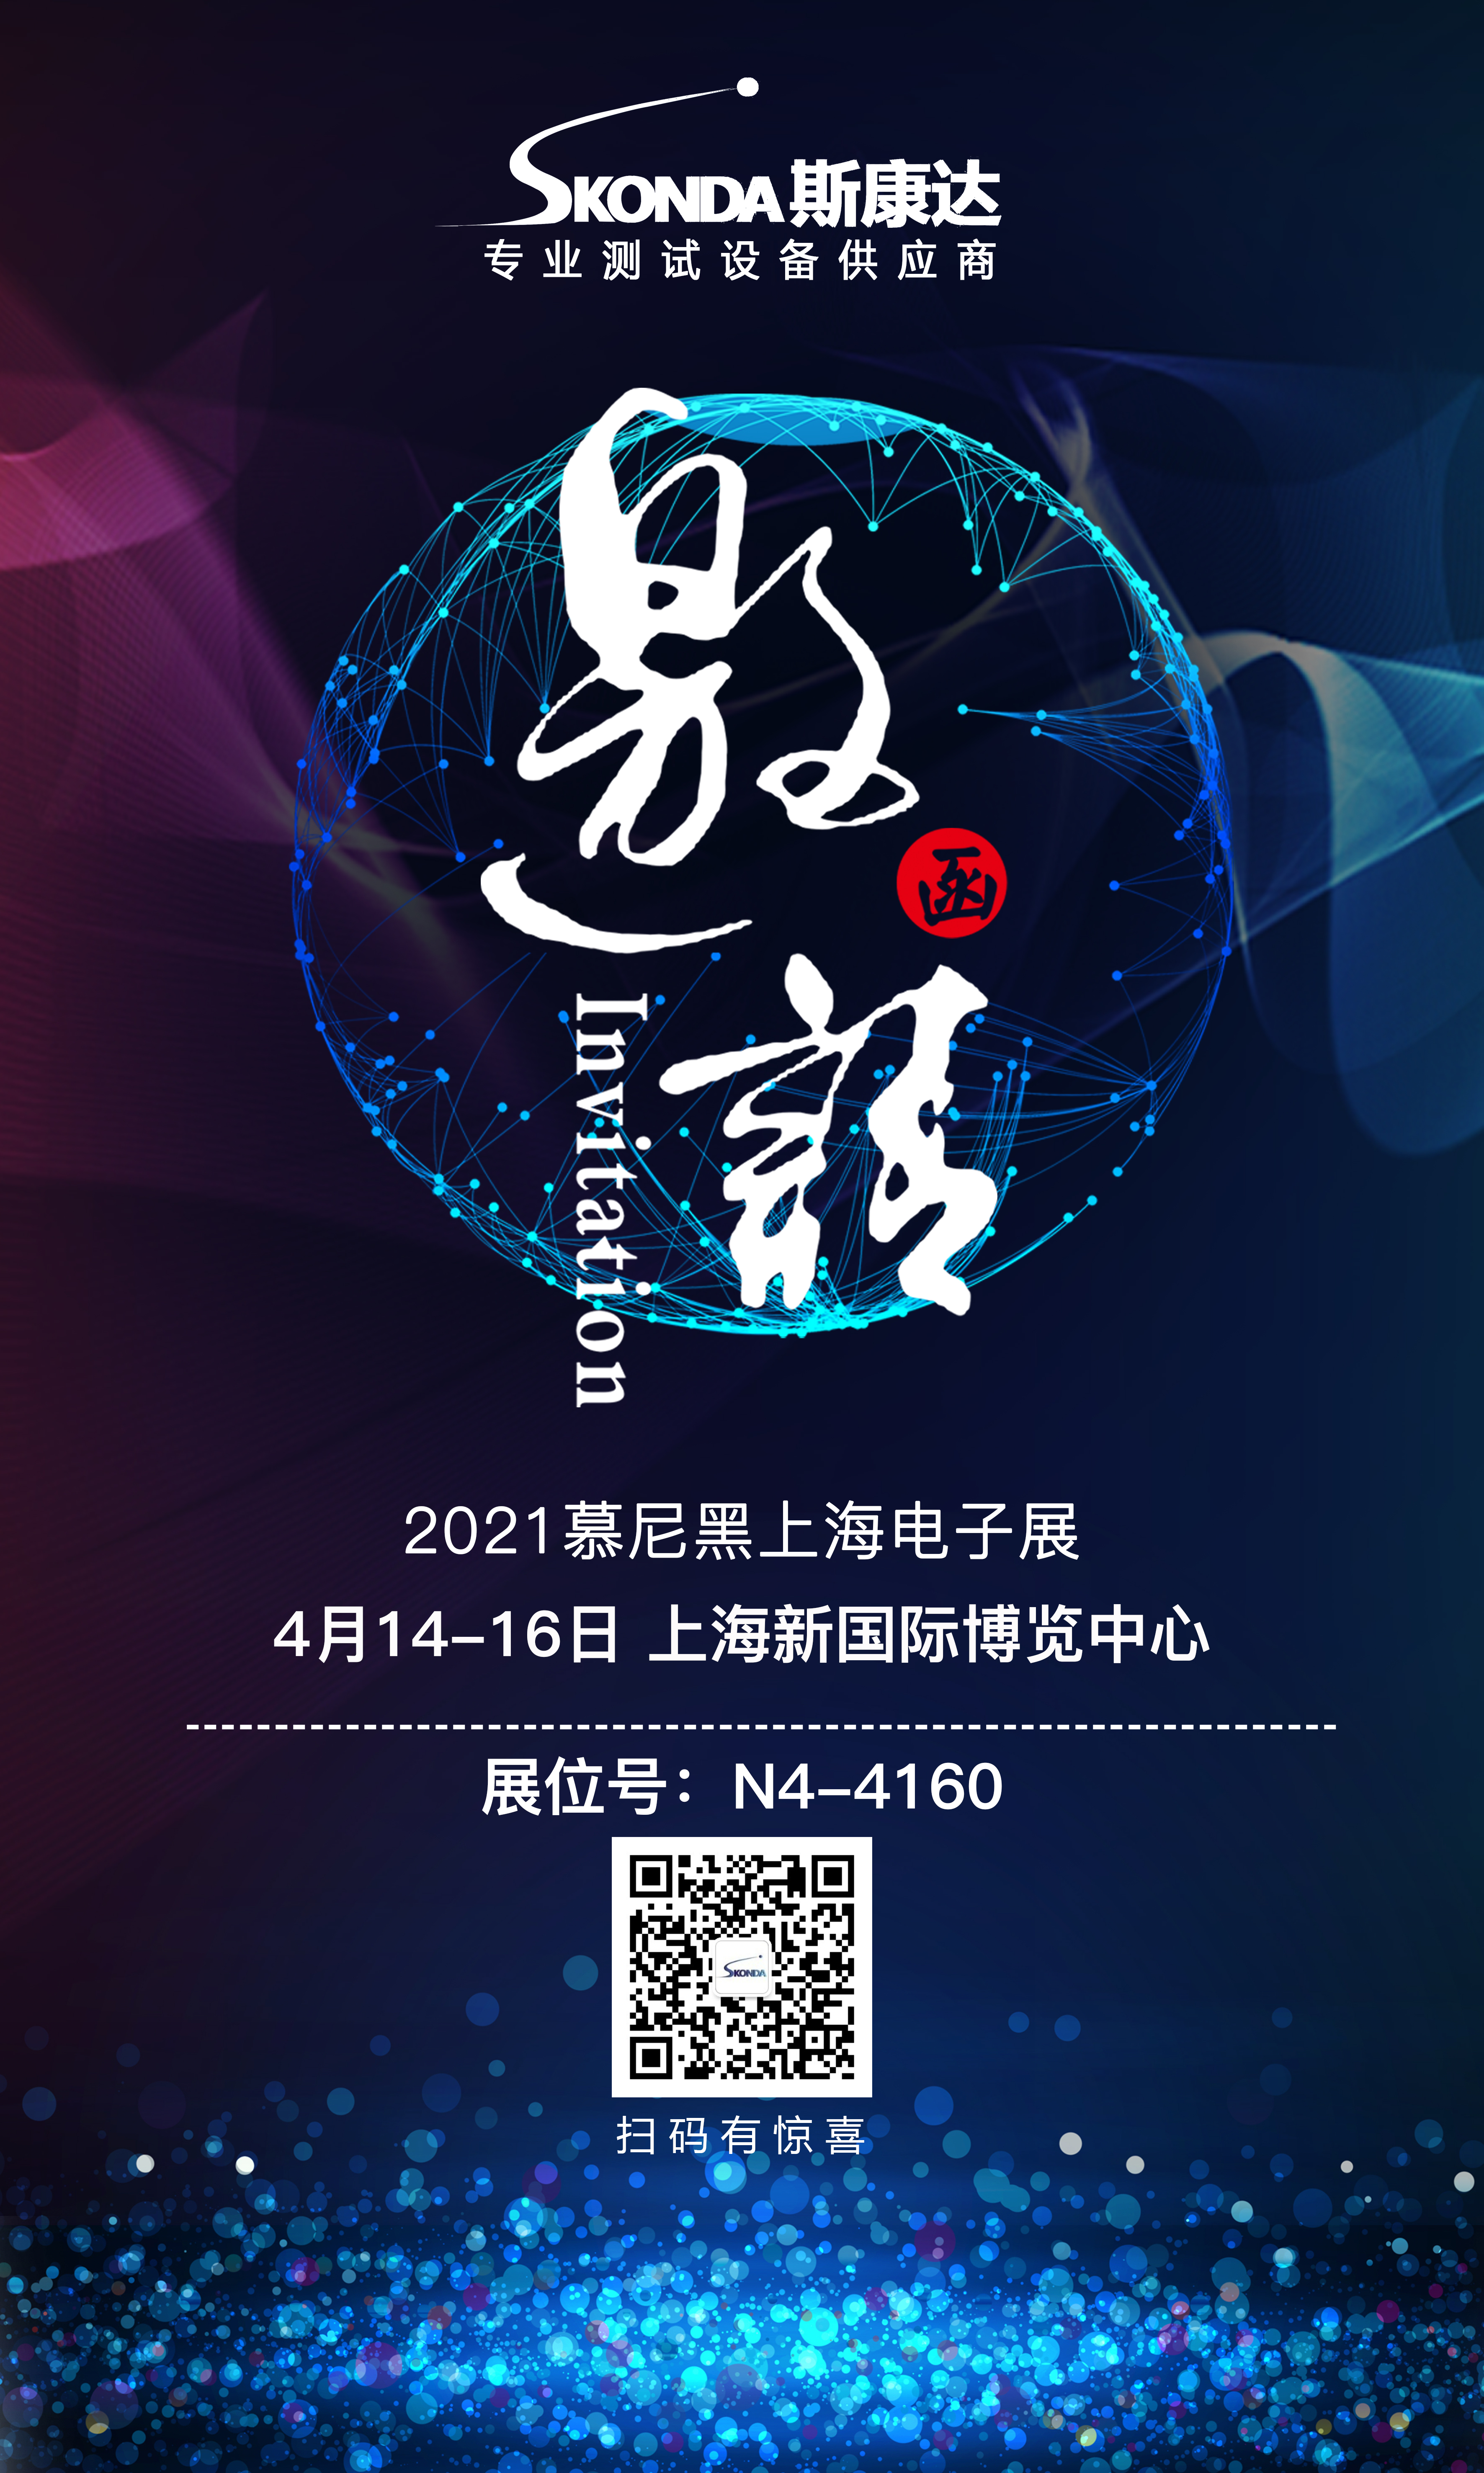 【展會邀請】斯康達誠邀您參加4月14-16日慕尼黑上海電子展！(圖1)